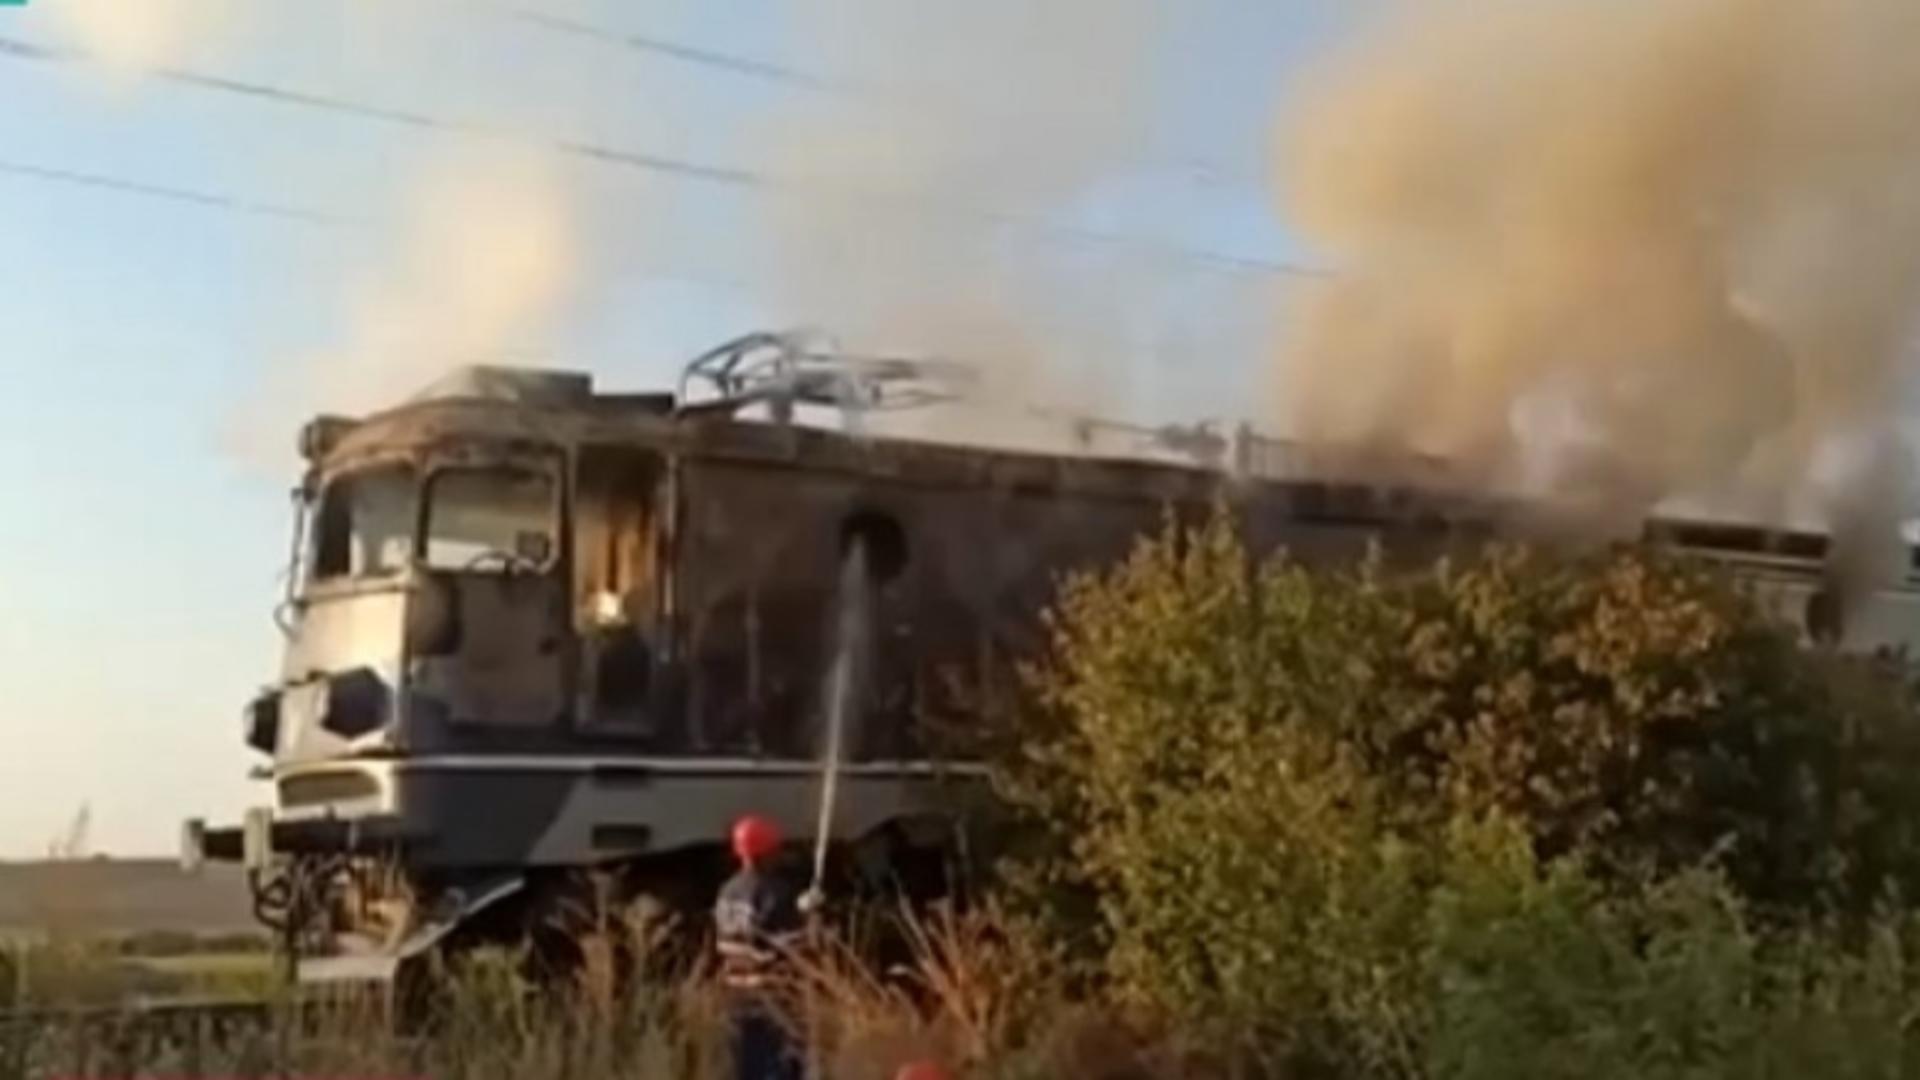 Incendiu la locomotiva unui tren de călători, în gara Băbeni din județul Vâlcea